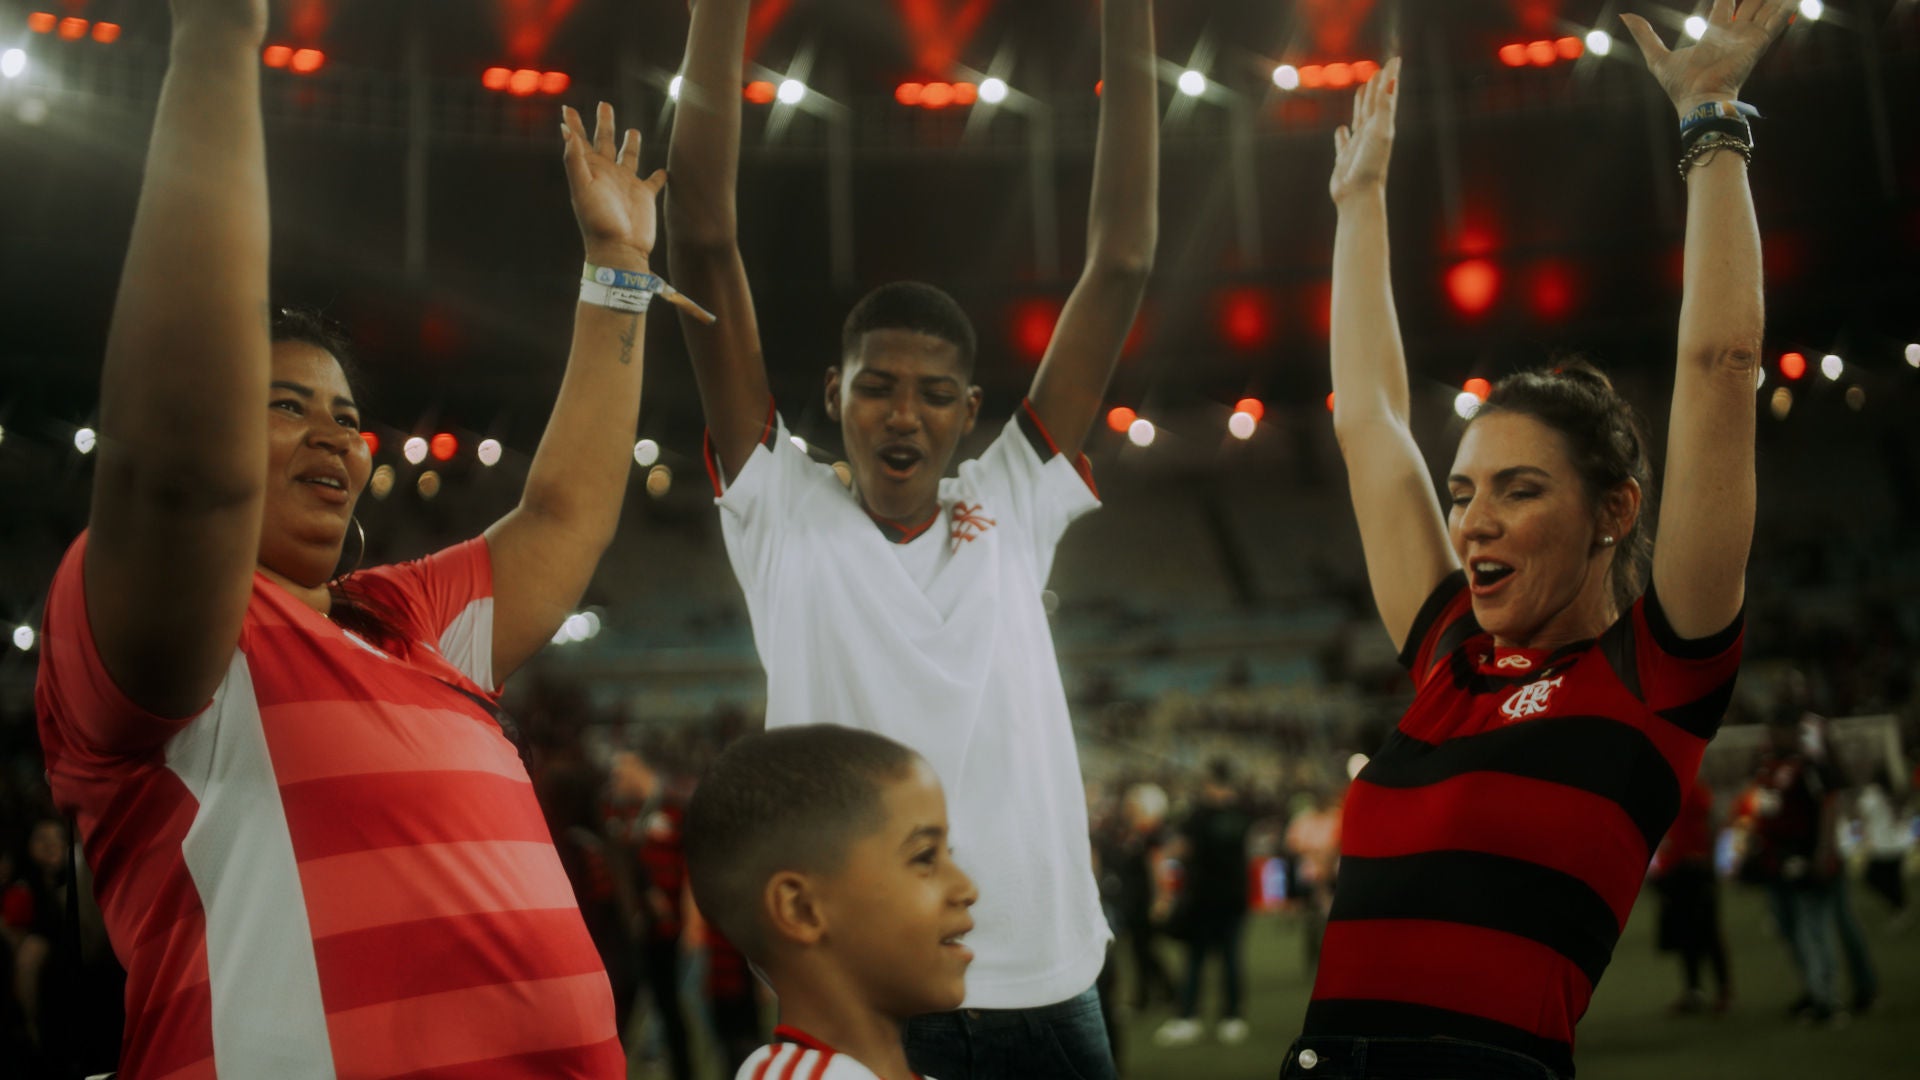 (foto de mãe Valéria, filho mais velho Alecsander e filho mais novo Arthur, vestidos com camisa do time Flamengo, torcendo com as mãos para cima junto a Glenda Kozlowski também vestida com a camisa do time)